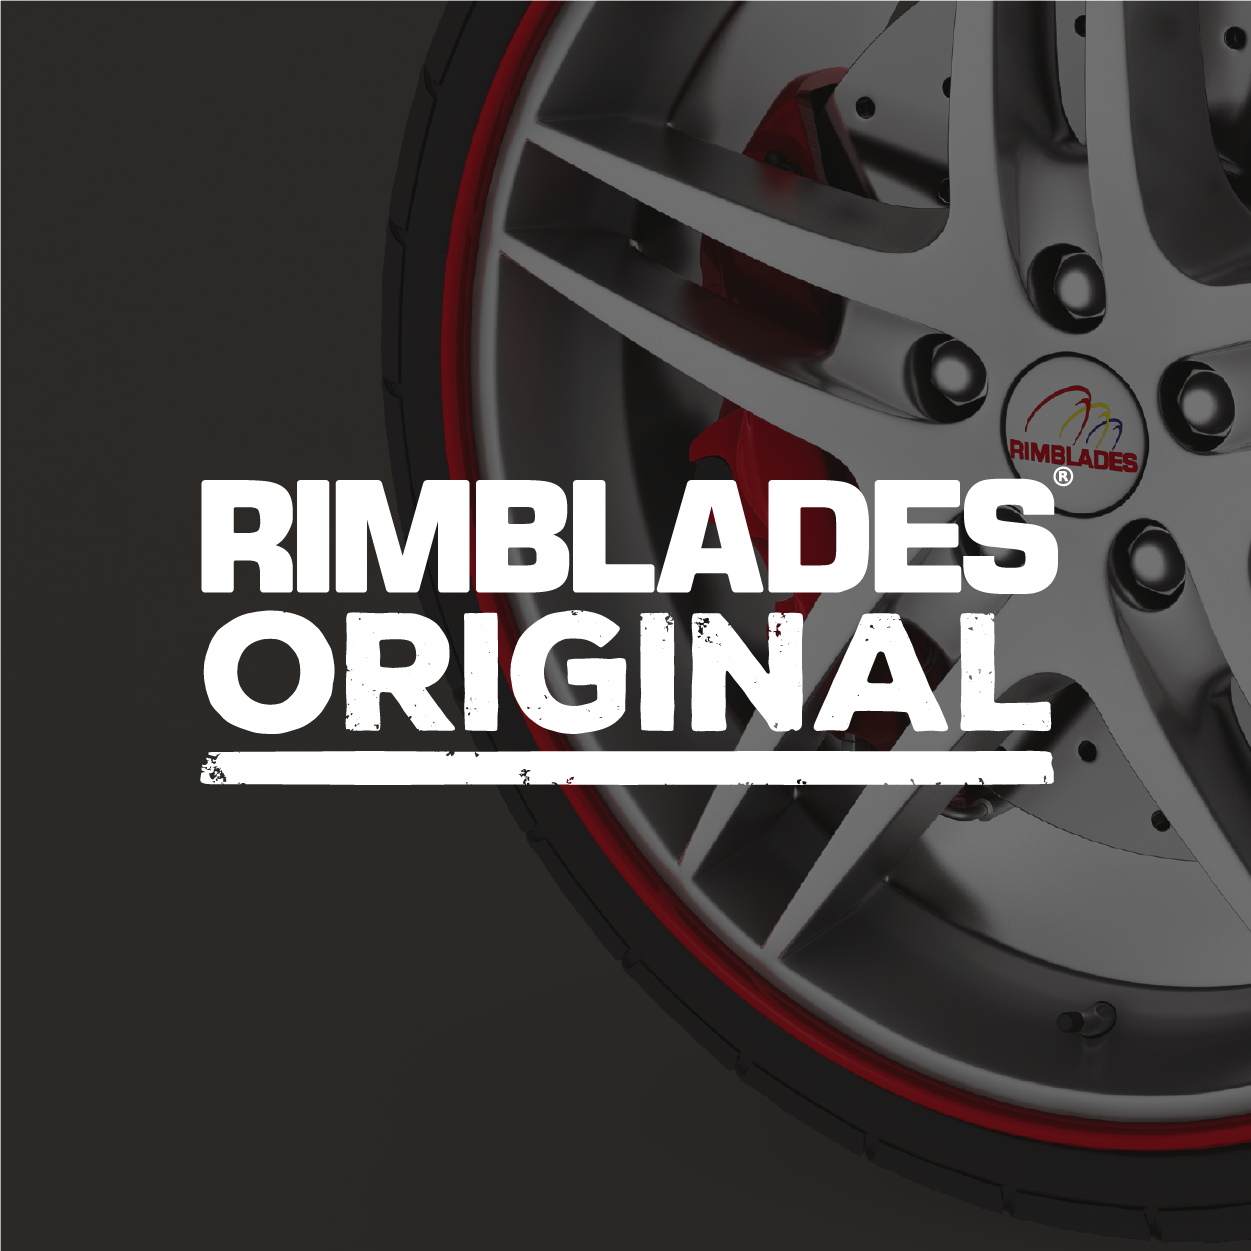  RimSavers RimBlades USA (Black) Wheel Rim Protectors Guard  Alloy Wheel from Curb Rash – Set of 4 Rim Protectors Easy to Install :  Automotive